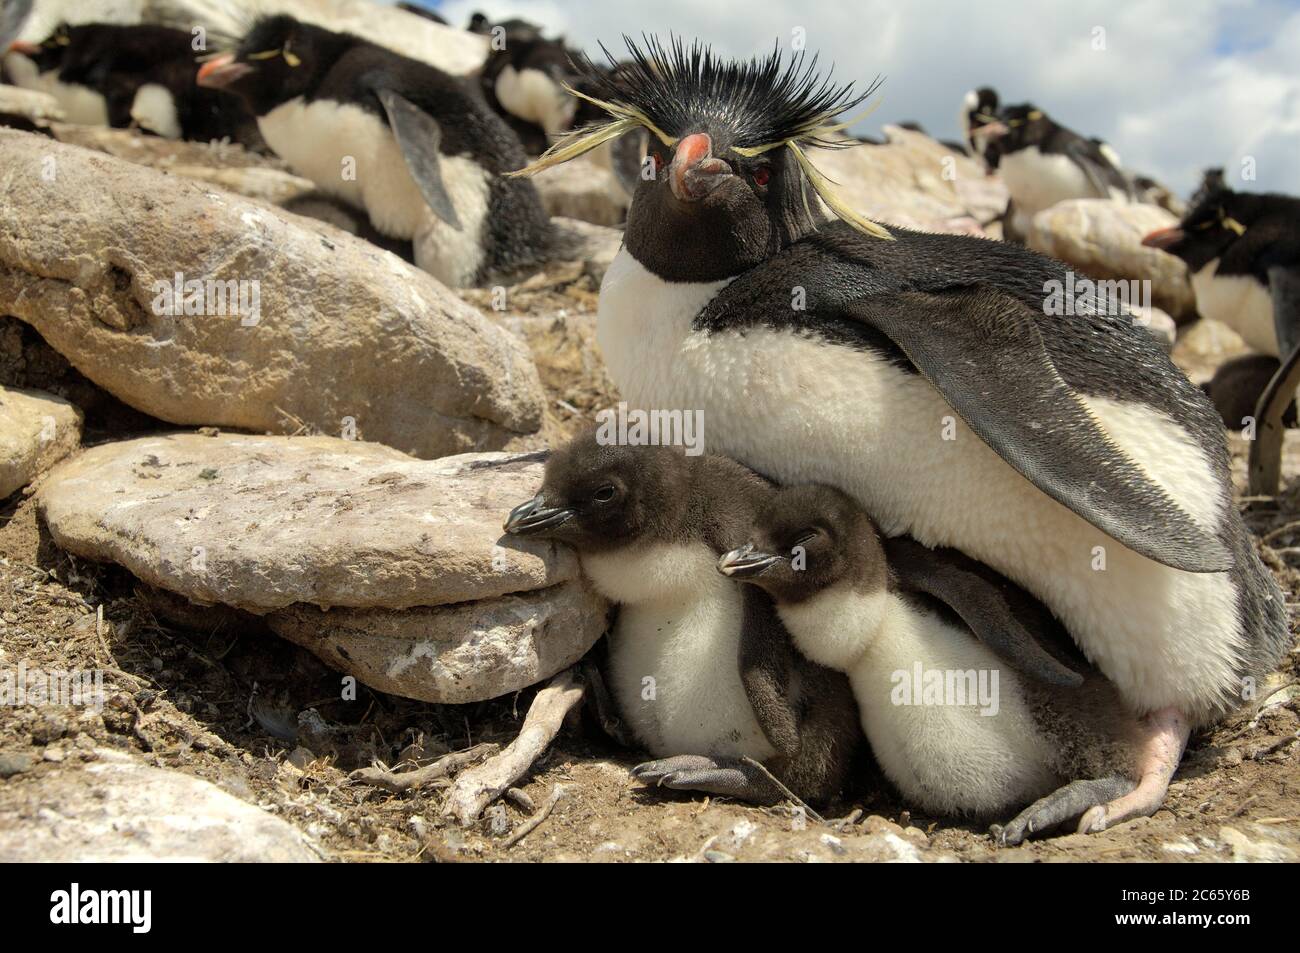 Dopo il loro viaggio di foraggio i pinguini di rockhopper (Eudyptes crisocome) ritornano dall'oceano in gruppi e iniziano a camminare e luppare fino alla loro colonia di riproduzione molto in salita. Foto Stock